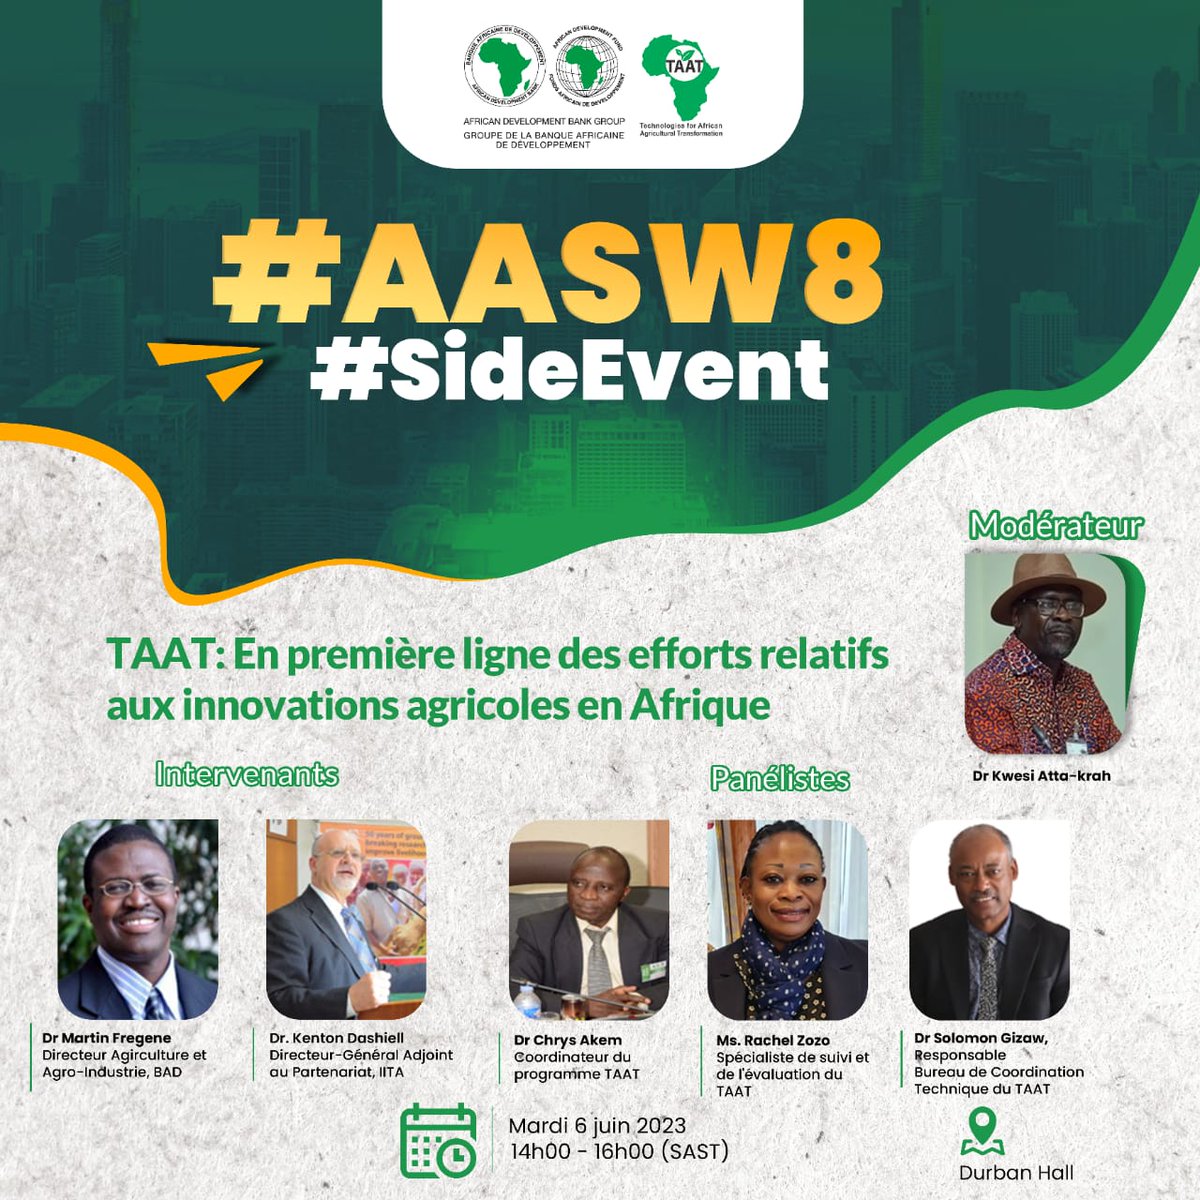 #AASW8 #SideEvent 'TAAT: en première ligne des efforts rélatifs aux innovations agricoles en Afrique' @AfDB_Group @FARAinfo  @IITA_CGIAR